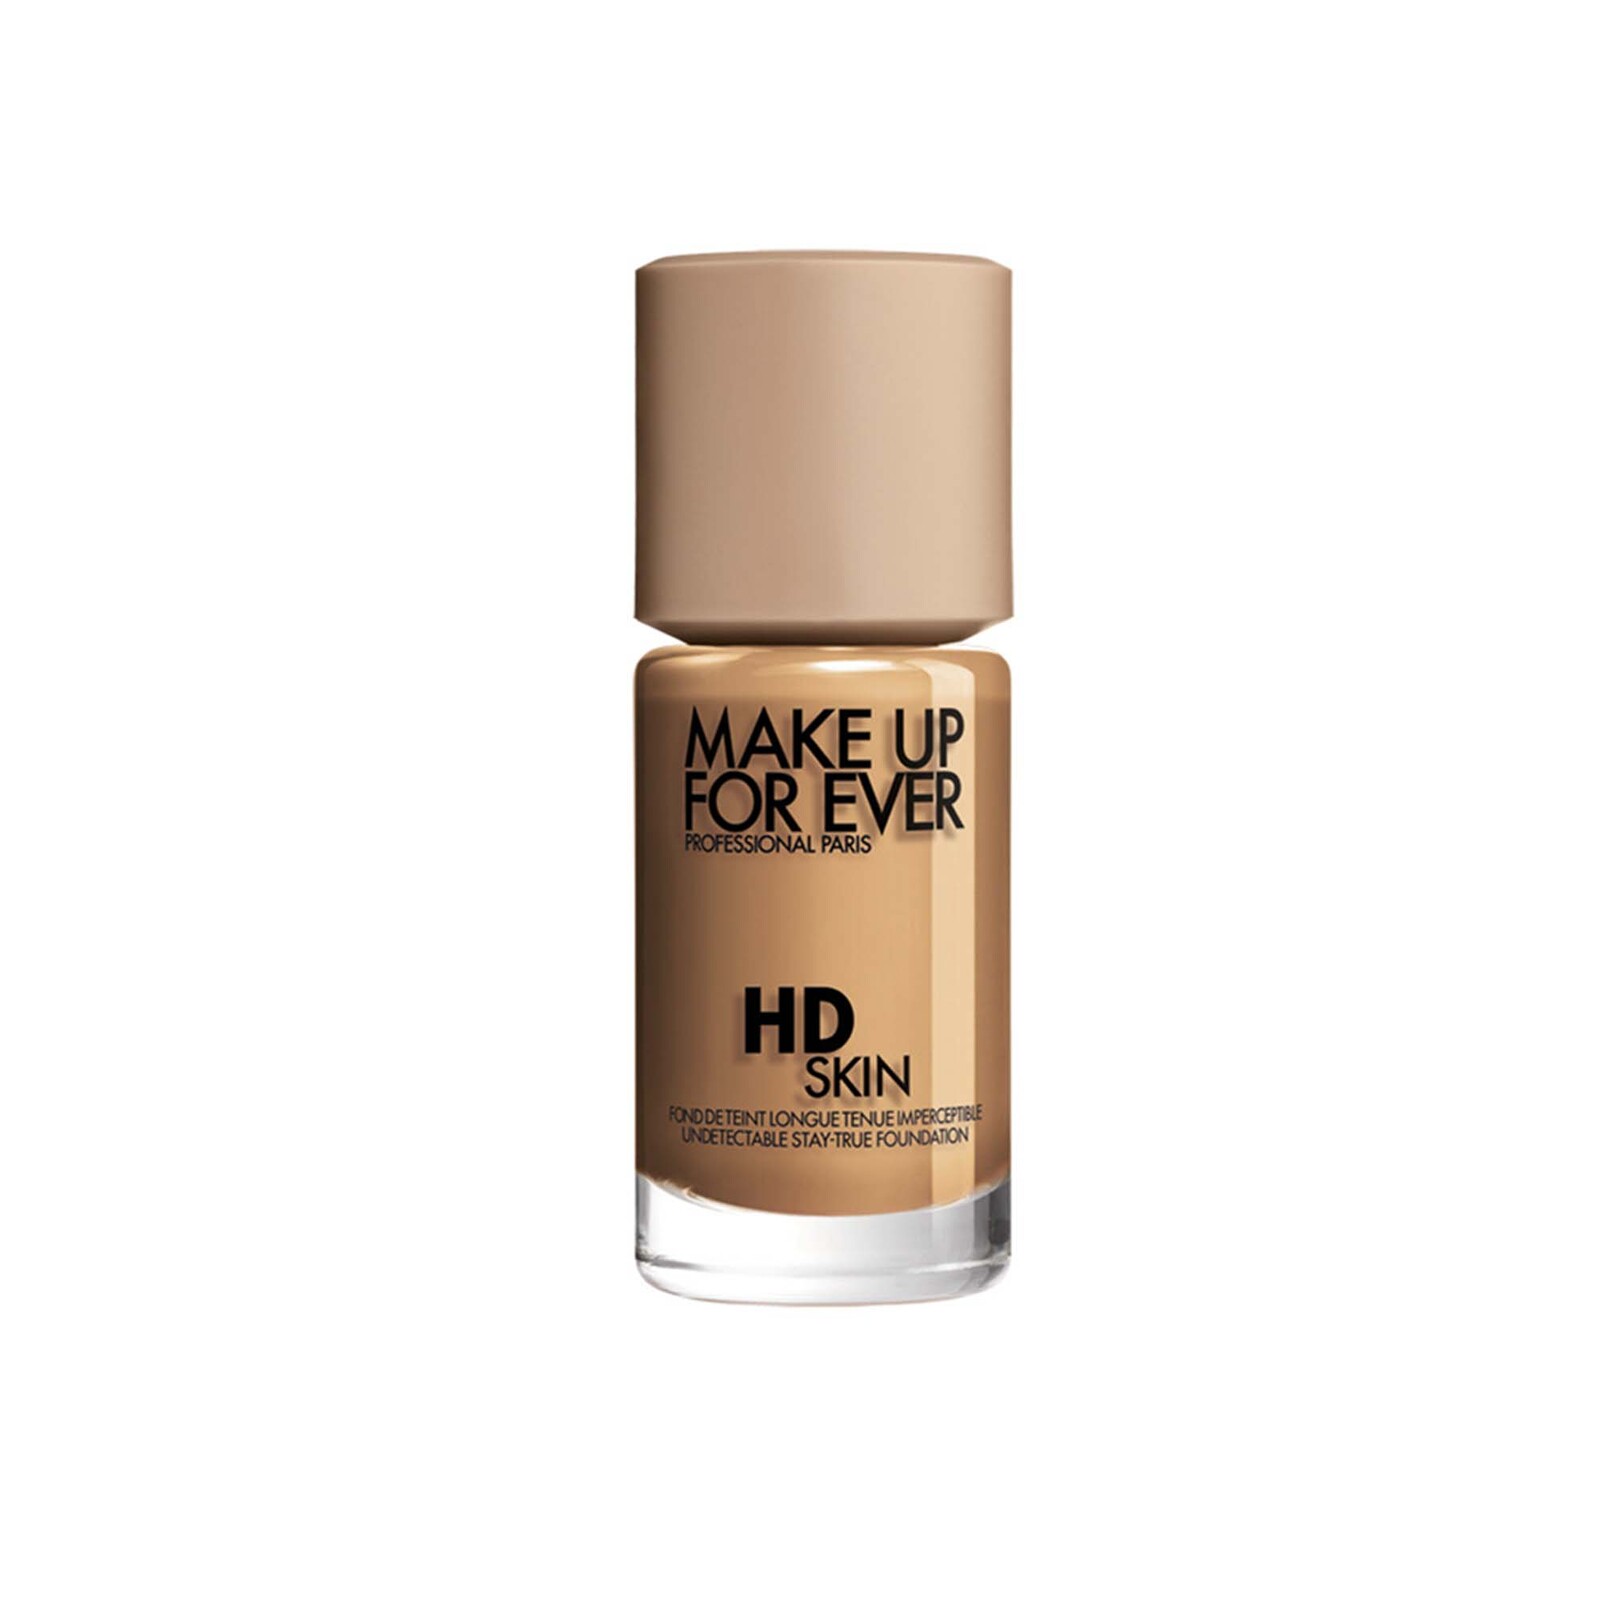 Make Up For Ever Hd Skin Foundation 30Ml 3Y46 Warm Cinnamon  